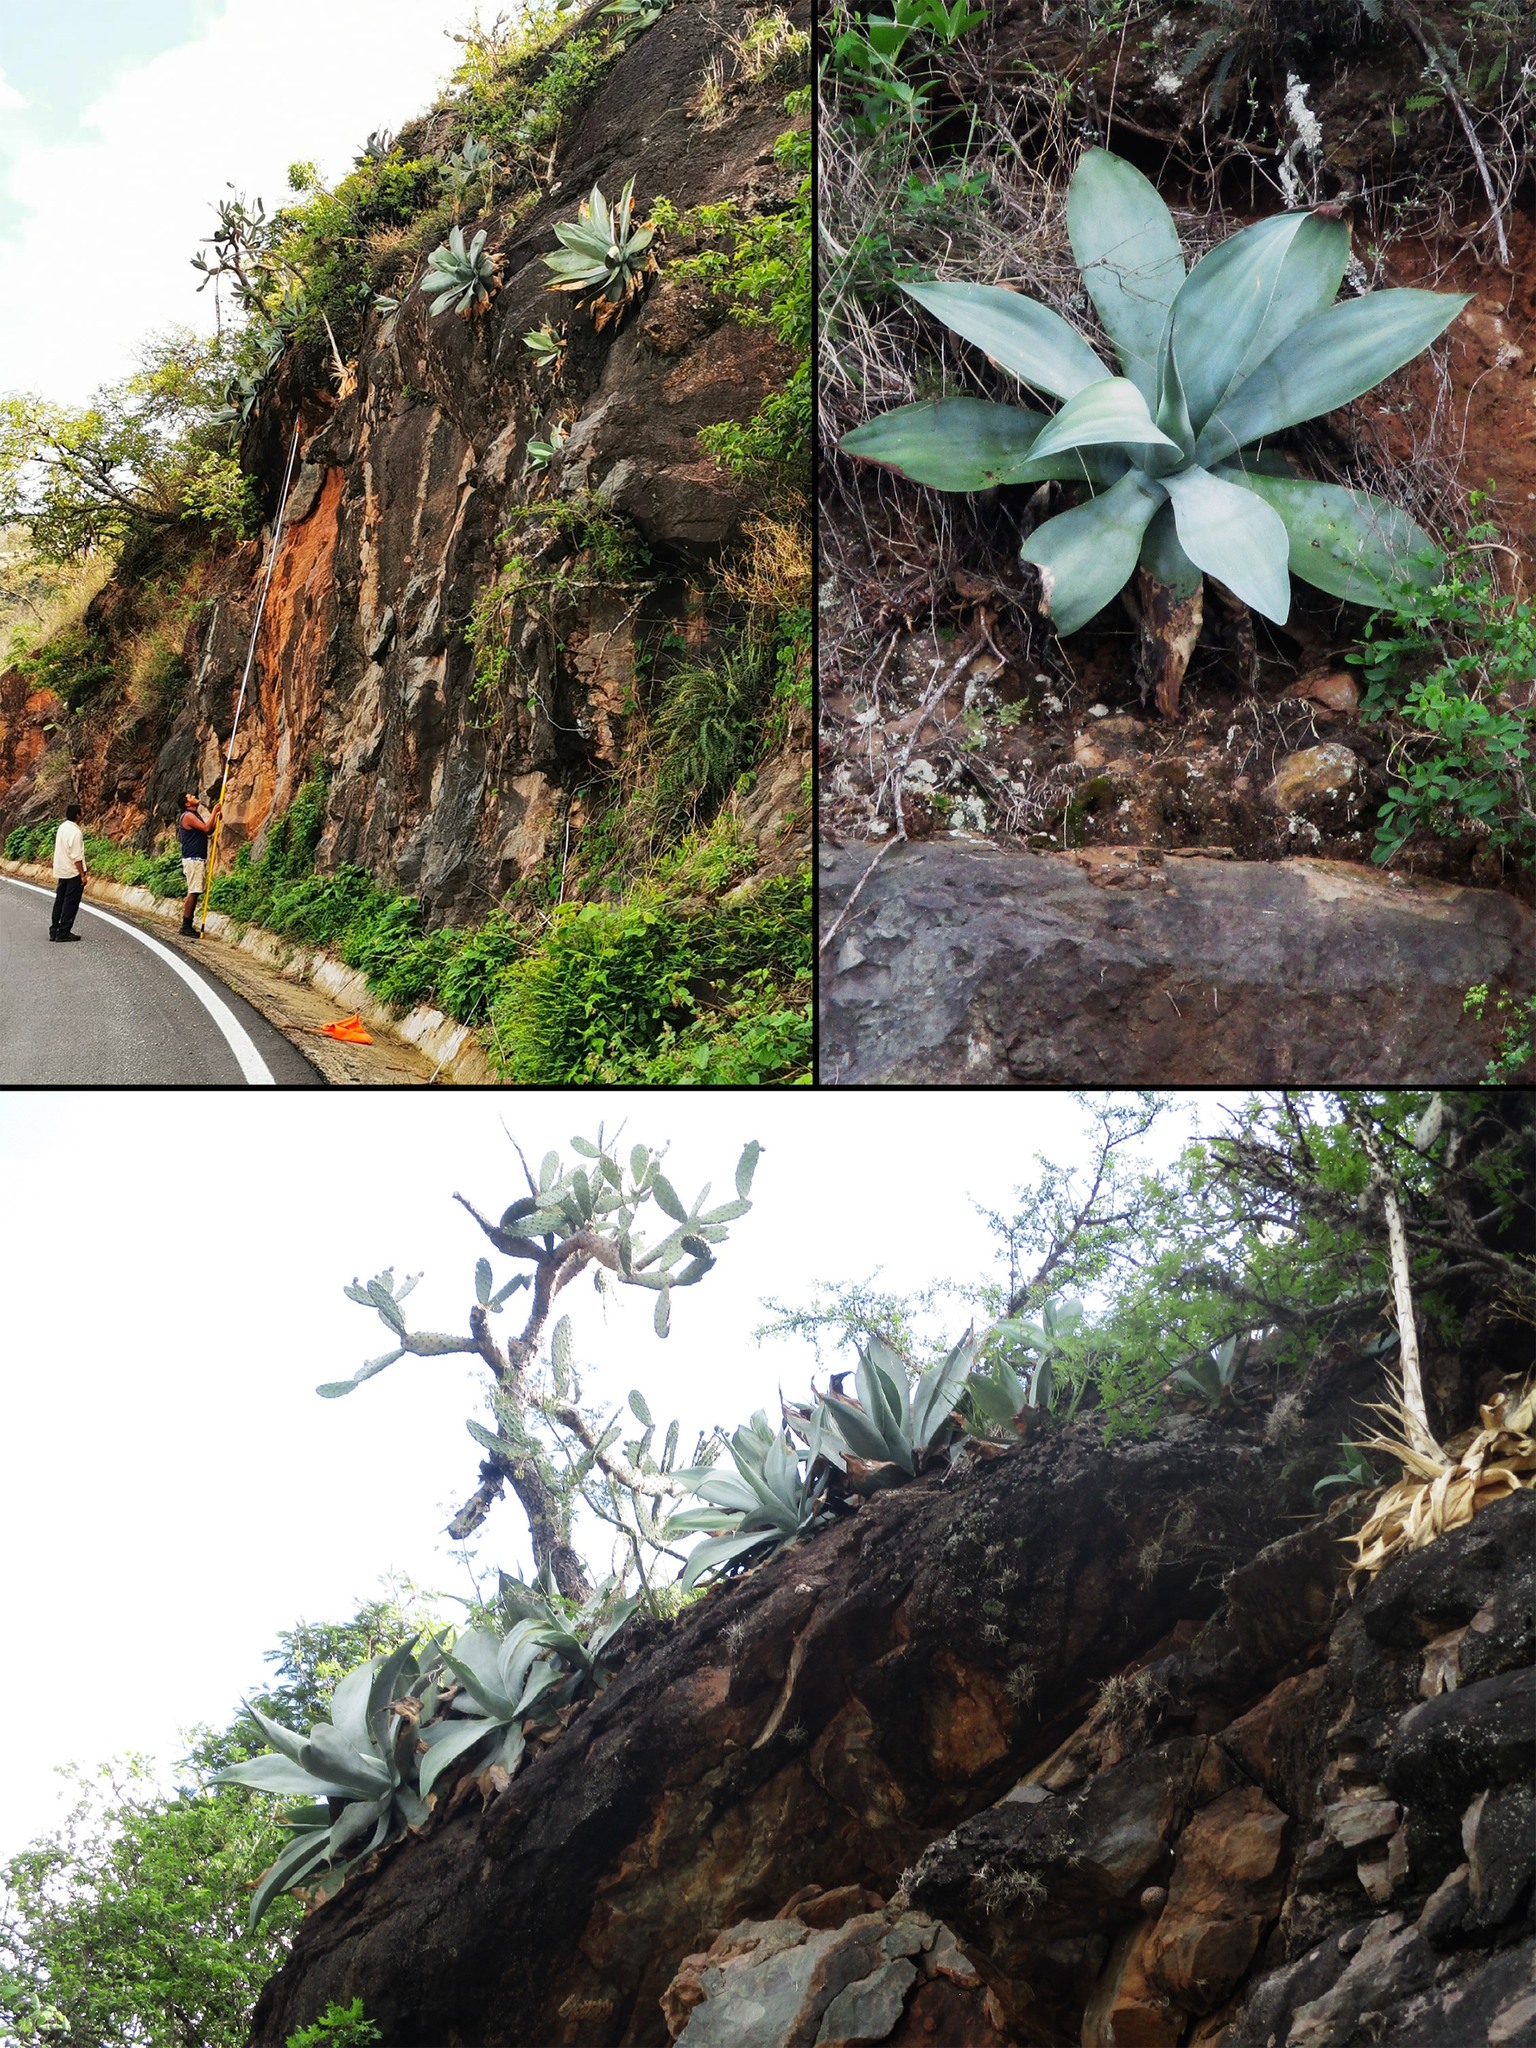 Estas especies se pueden encontrar en las sierras de los municipios de Chiquilistlán y Tapalpa y pueden producirse y emplearse con fines ornamentales o decorativos